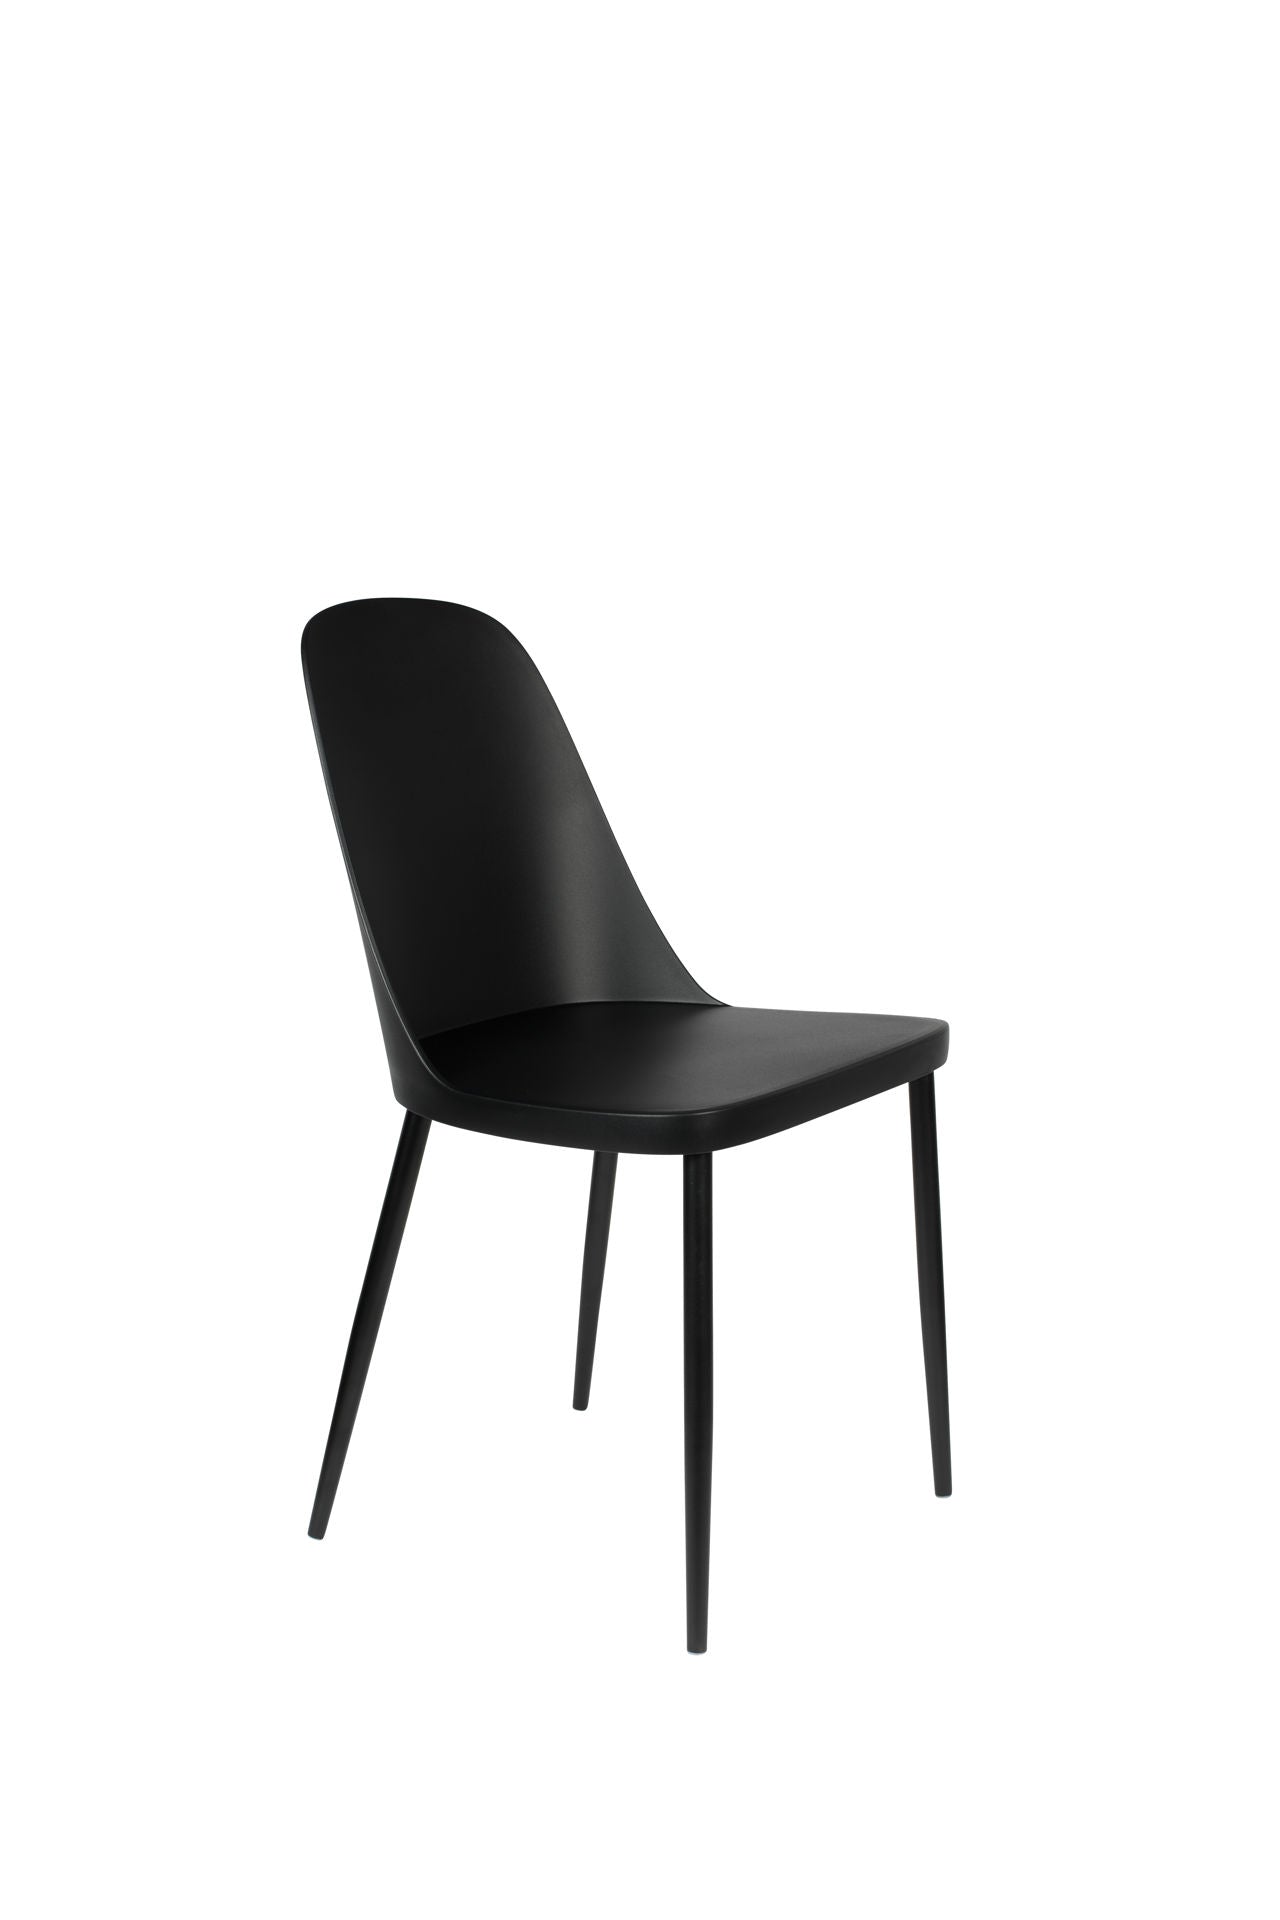 Nancy's Incline Village Chair - Scandinave - Noir - Polypropylène, Acier - 53,5 cm x 46 cm x 85 cm